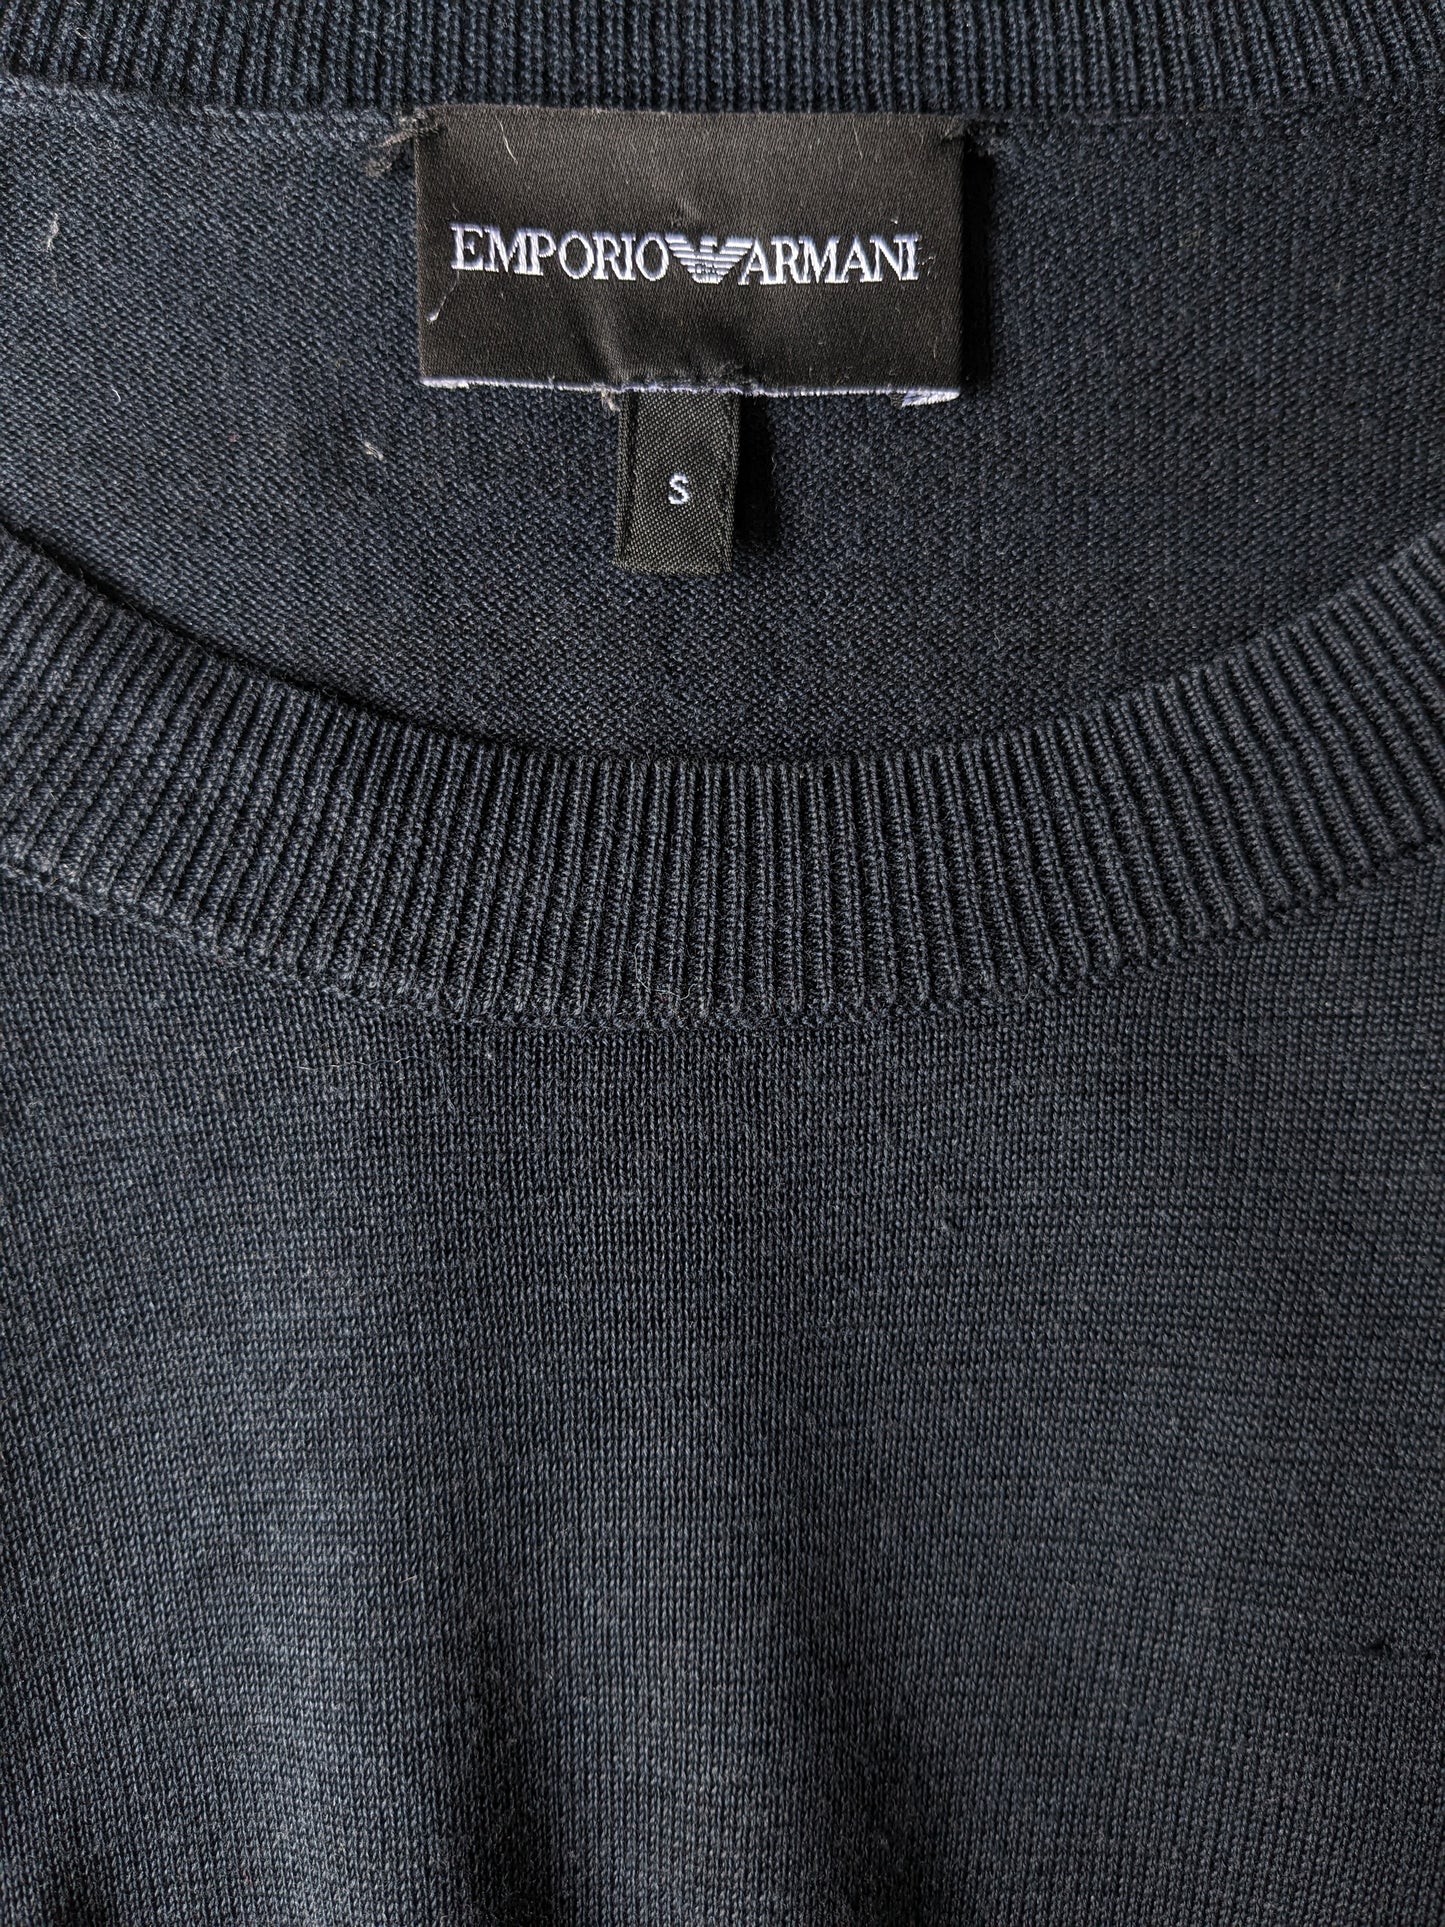 Emporio Armani thin sweater. Blue black colored. Size S.